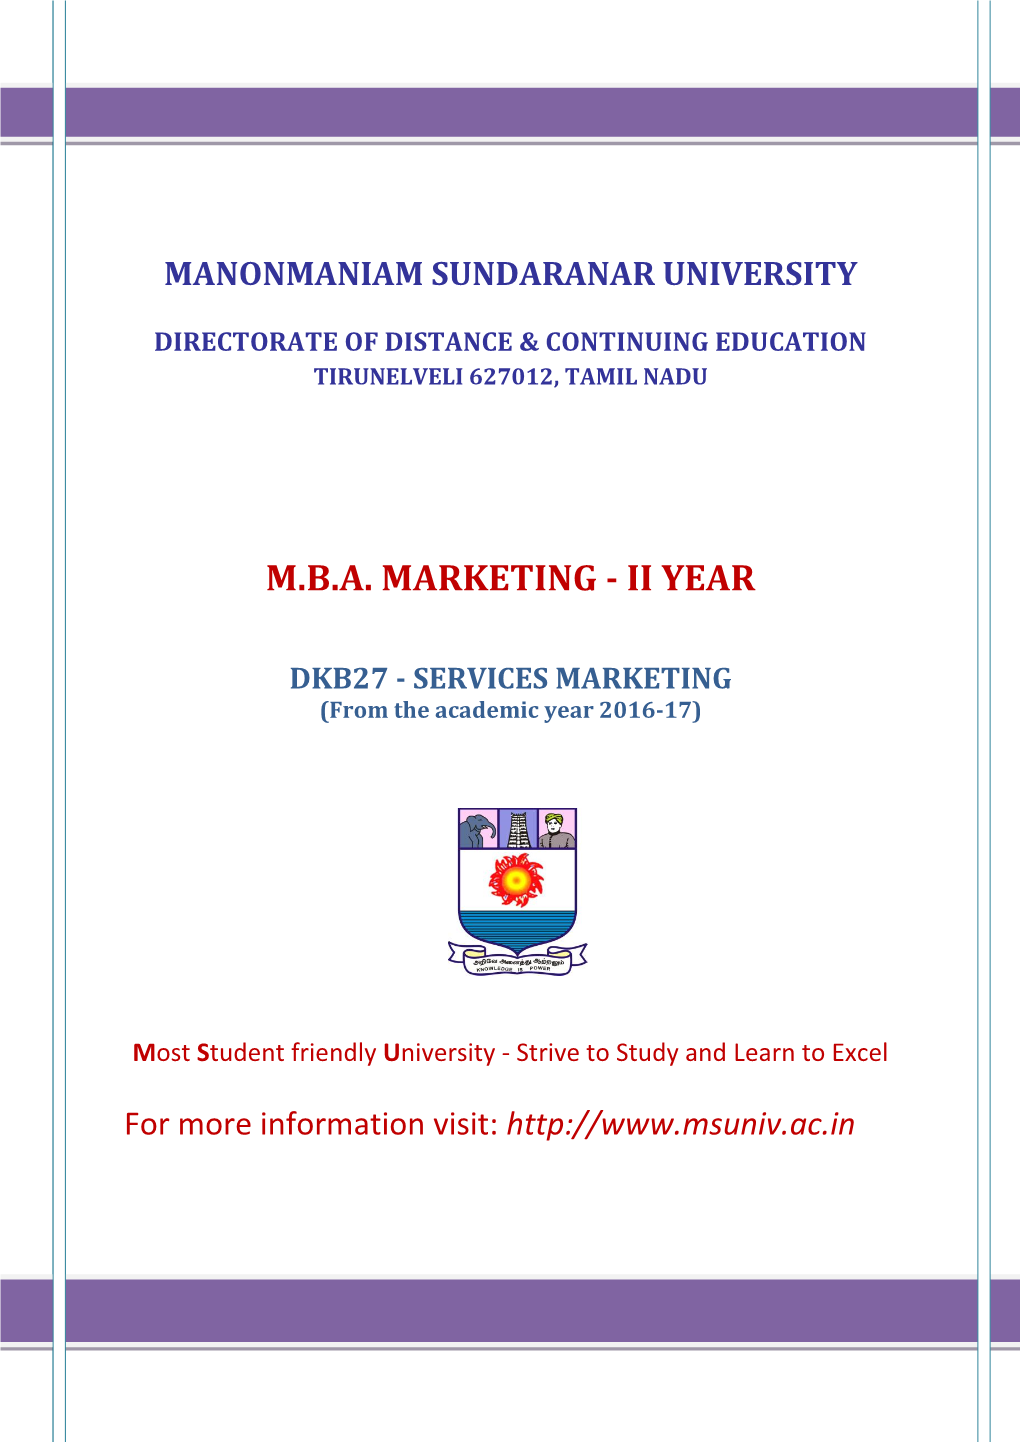 M.B.A. Marketing - Ii Year